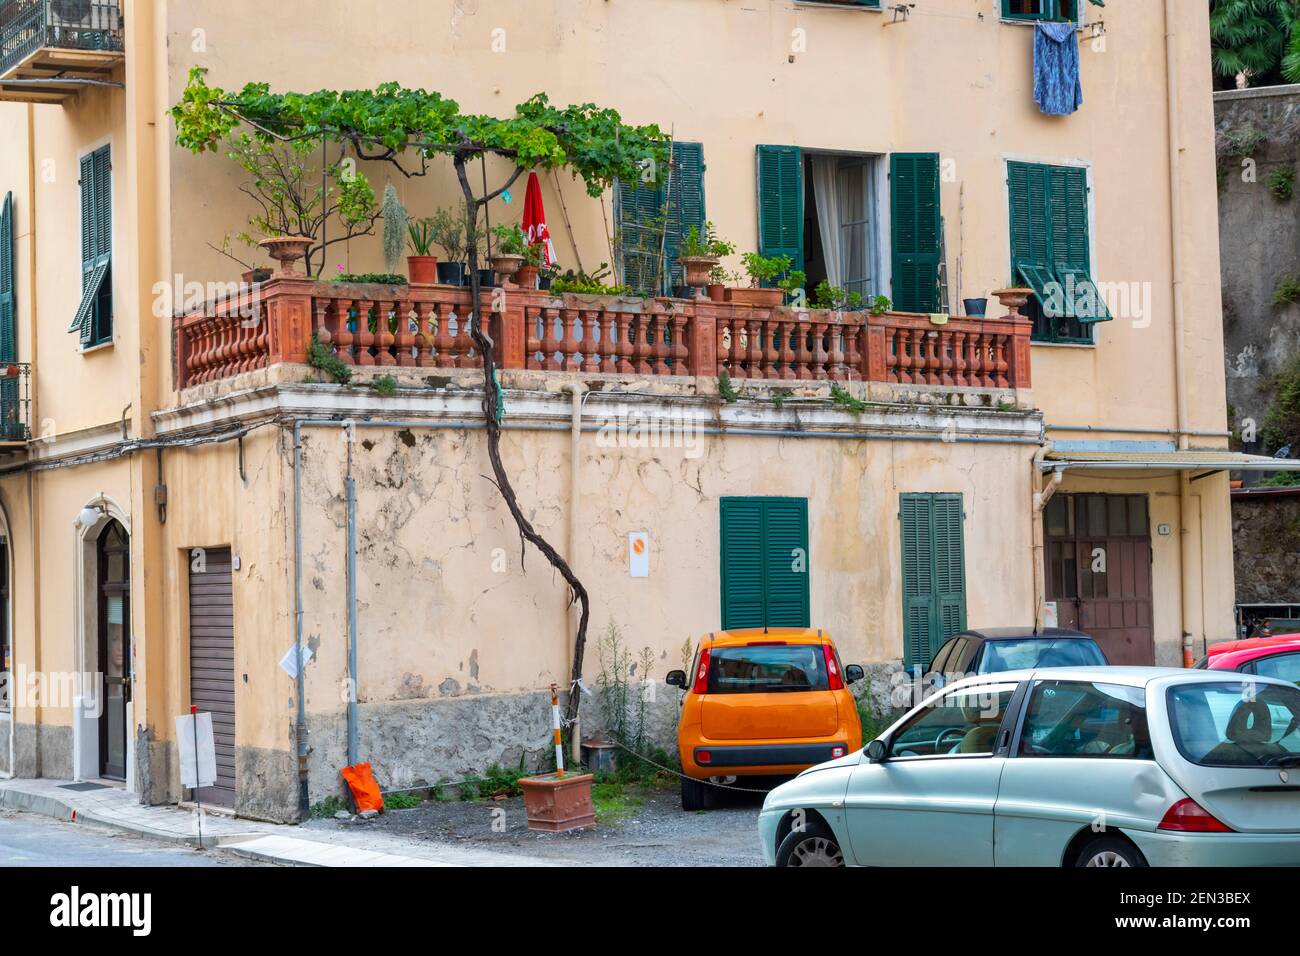 Un albero alto e skinny cresce da un parcheggio in cemento accanto ad un appartamento nel centro storico di Ventimiglia, in Italia, sulla Riviera Italiana. Foto Stock